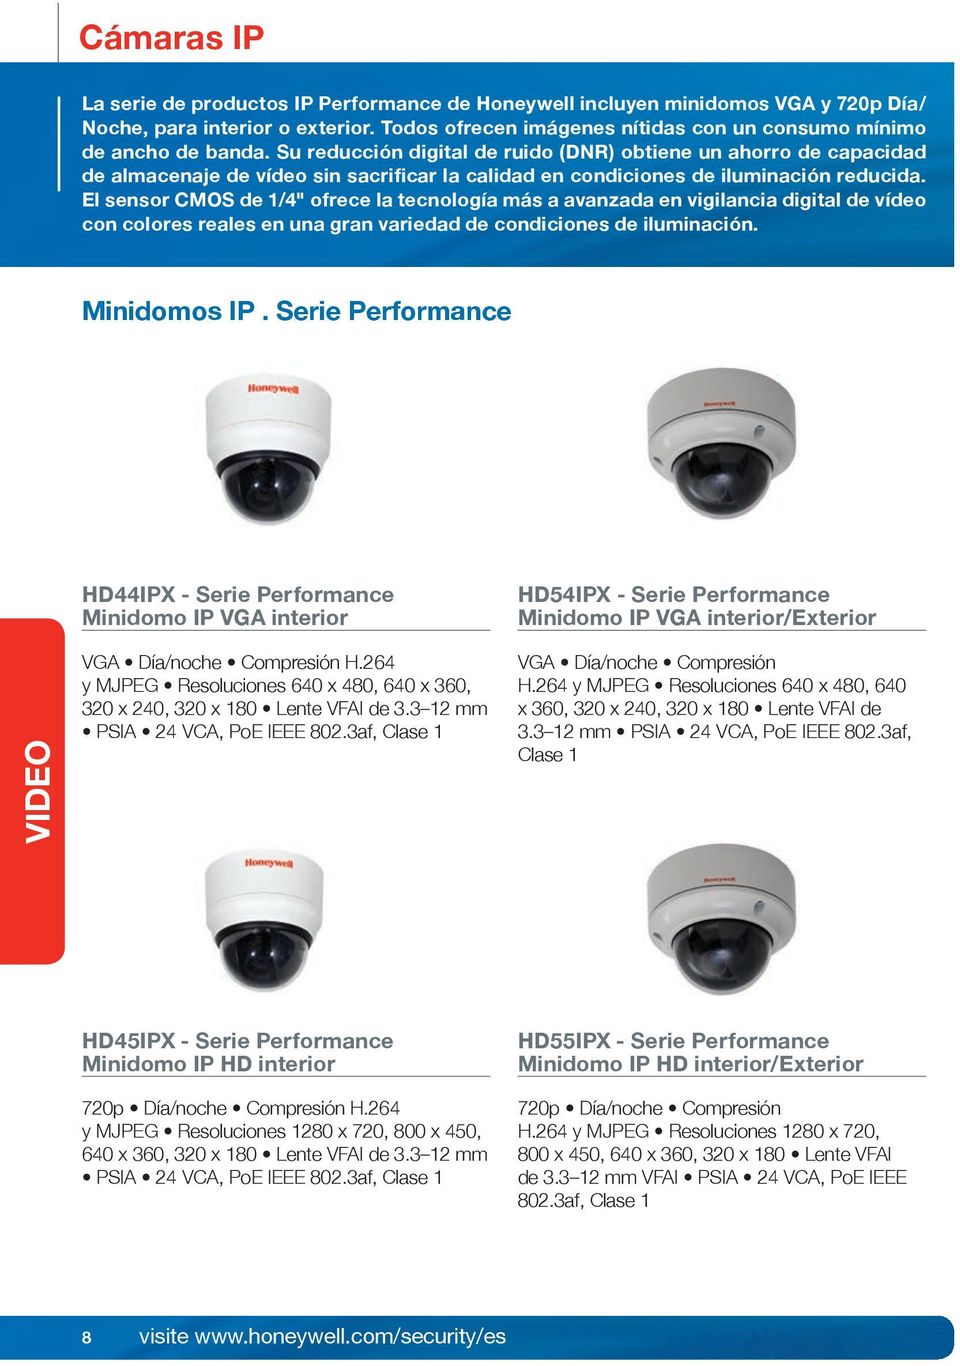 El sensor CMOS de 1/4" ofrece la tecnología más a avanzada en vigilancia digital de vídeo con colores reales en una gran variedad de condiciones de iluminación. Minidomos IP.